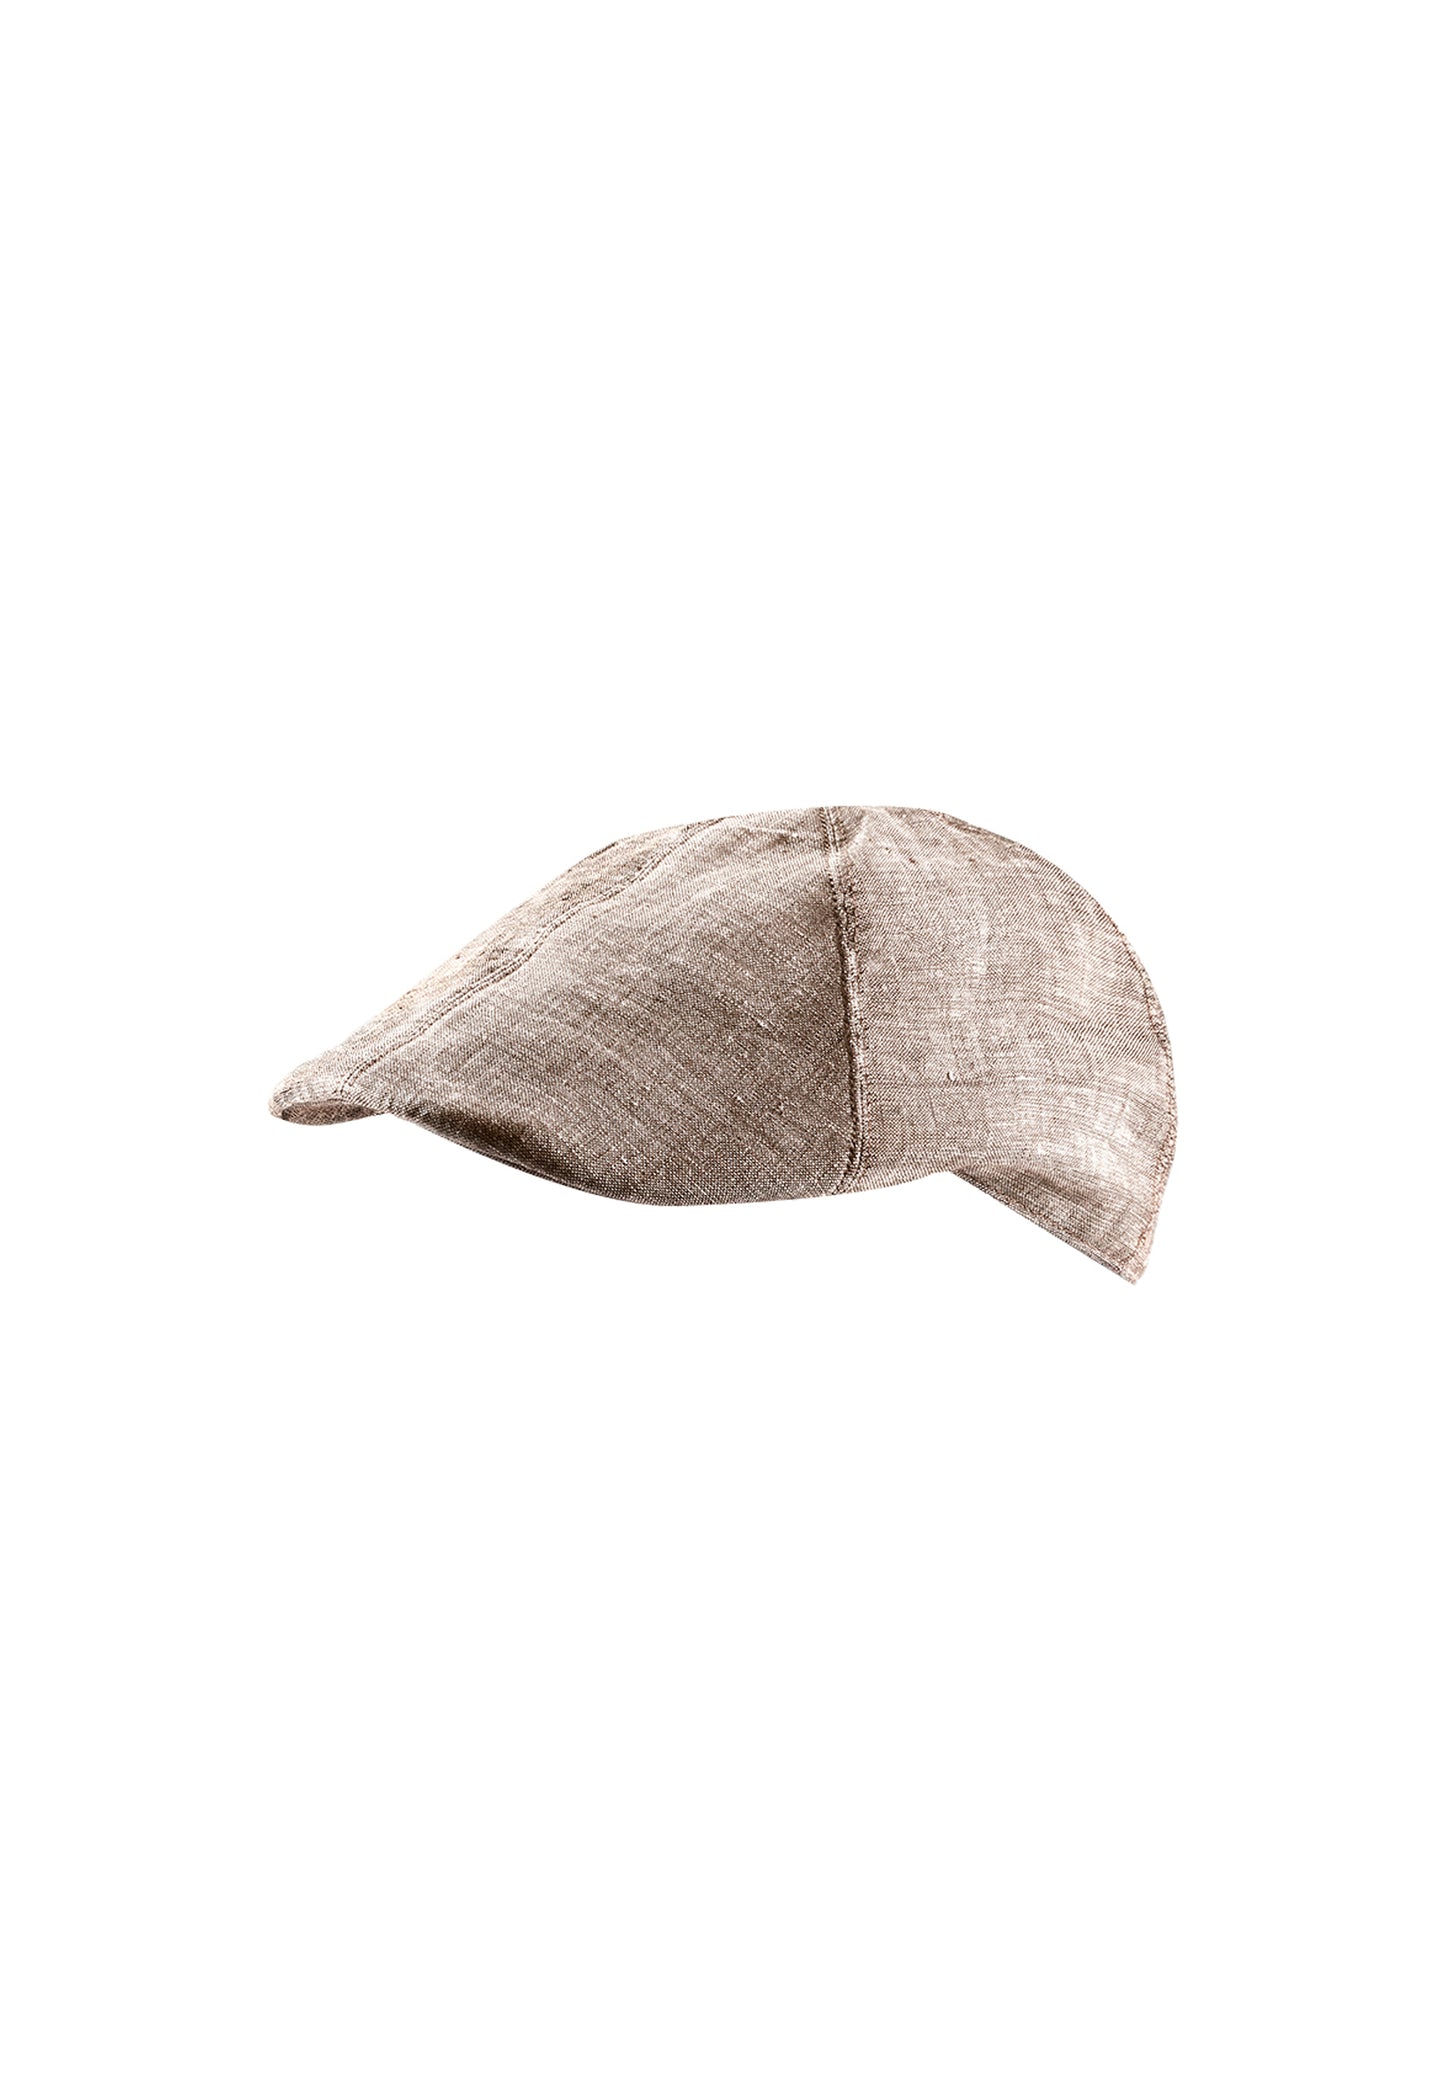 Flat cap in a sporty linen look in Melba